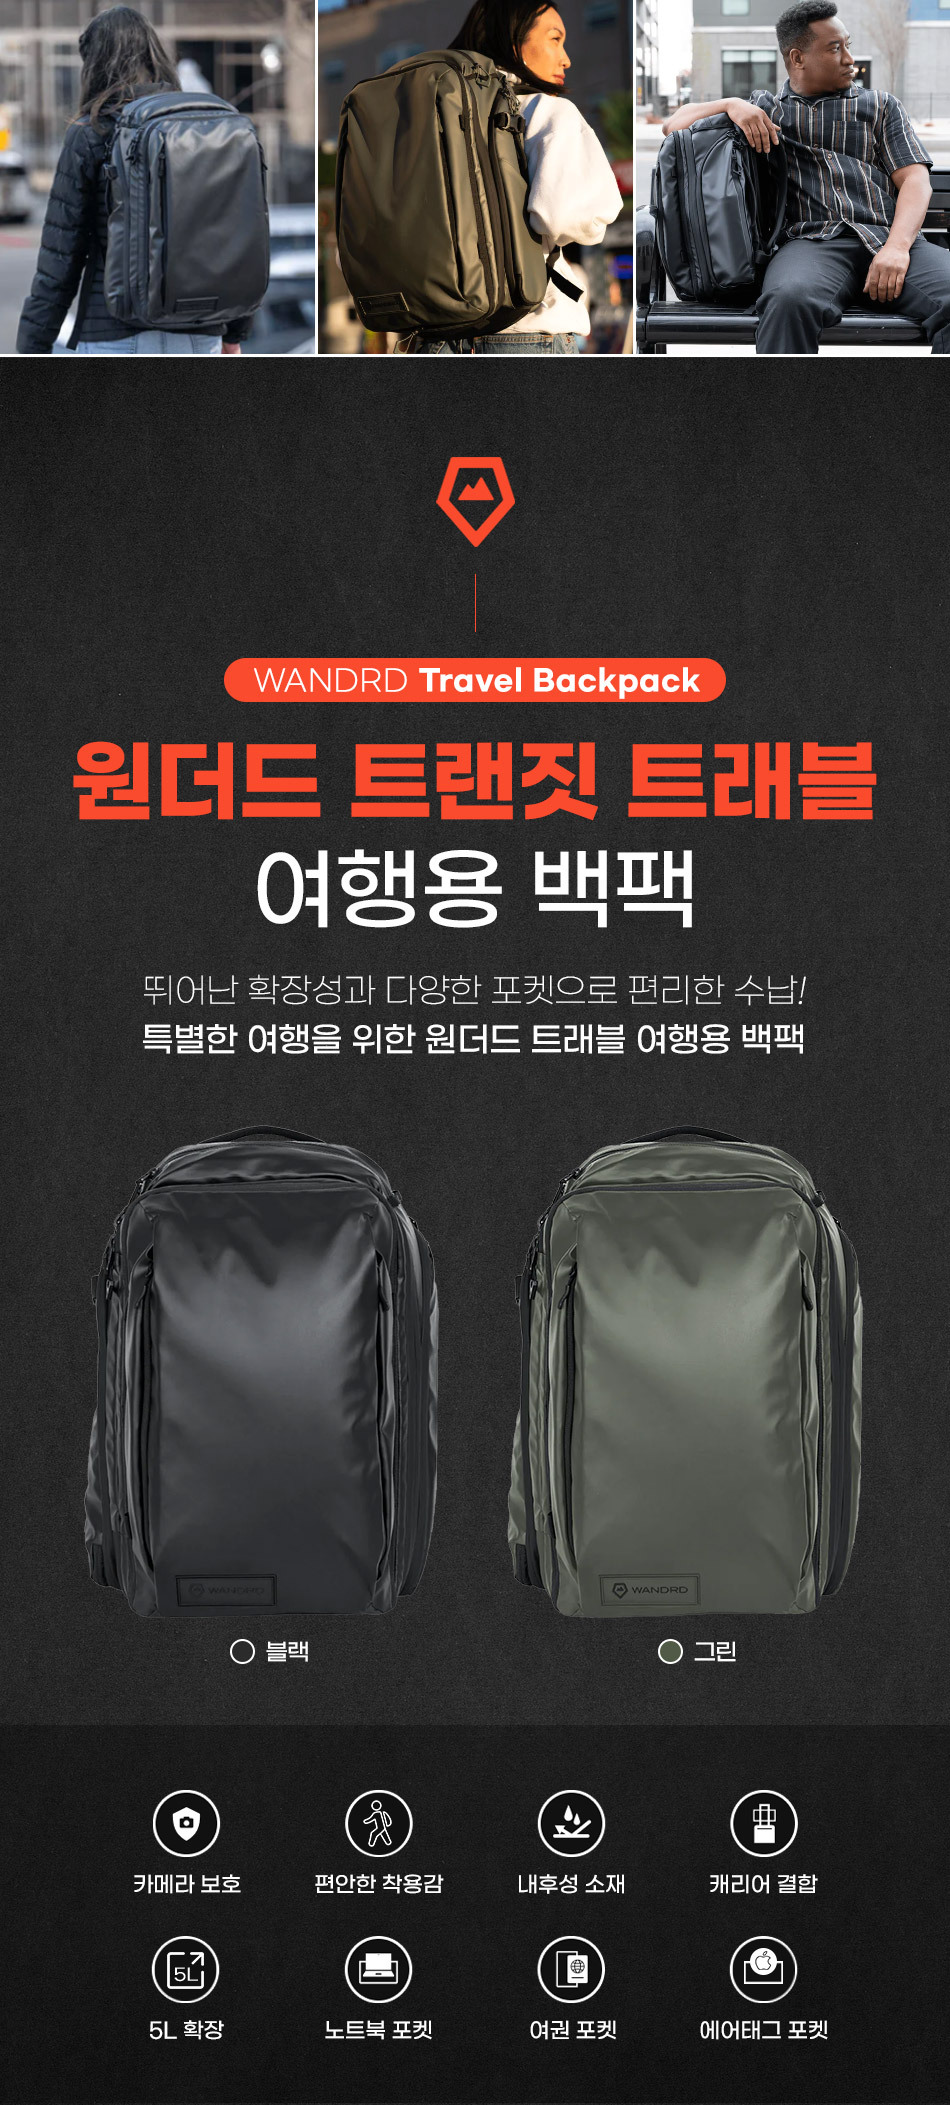 travel_backpack_01.jpg